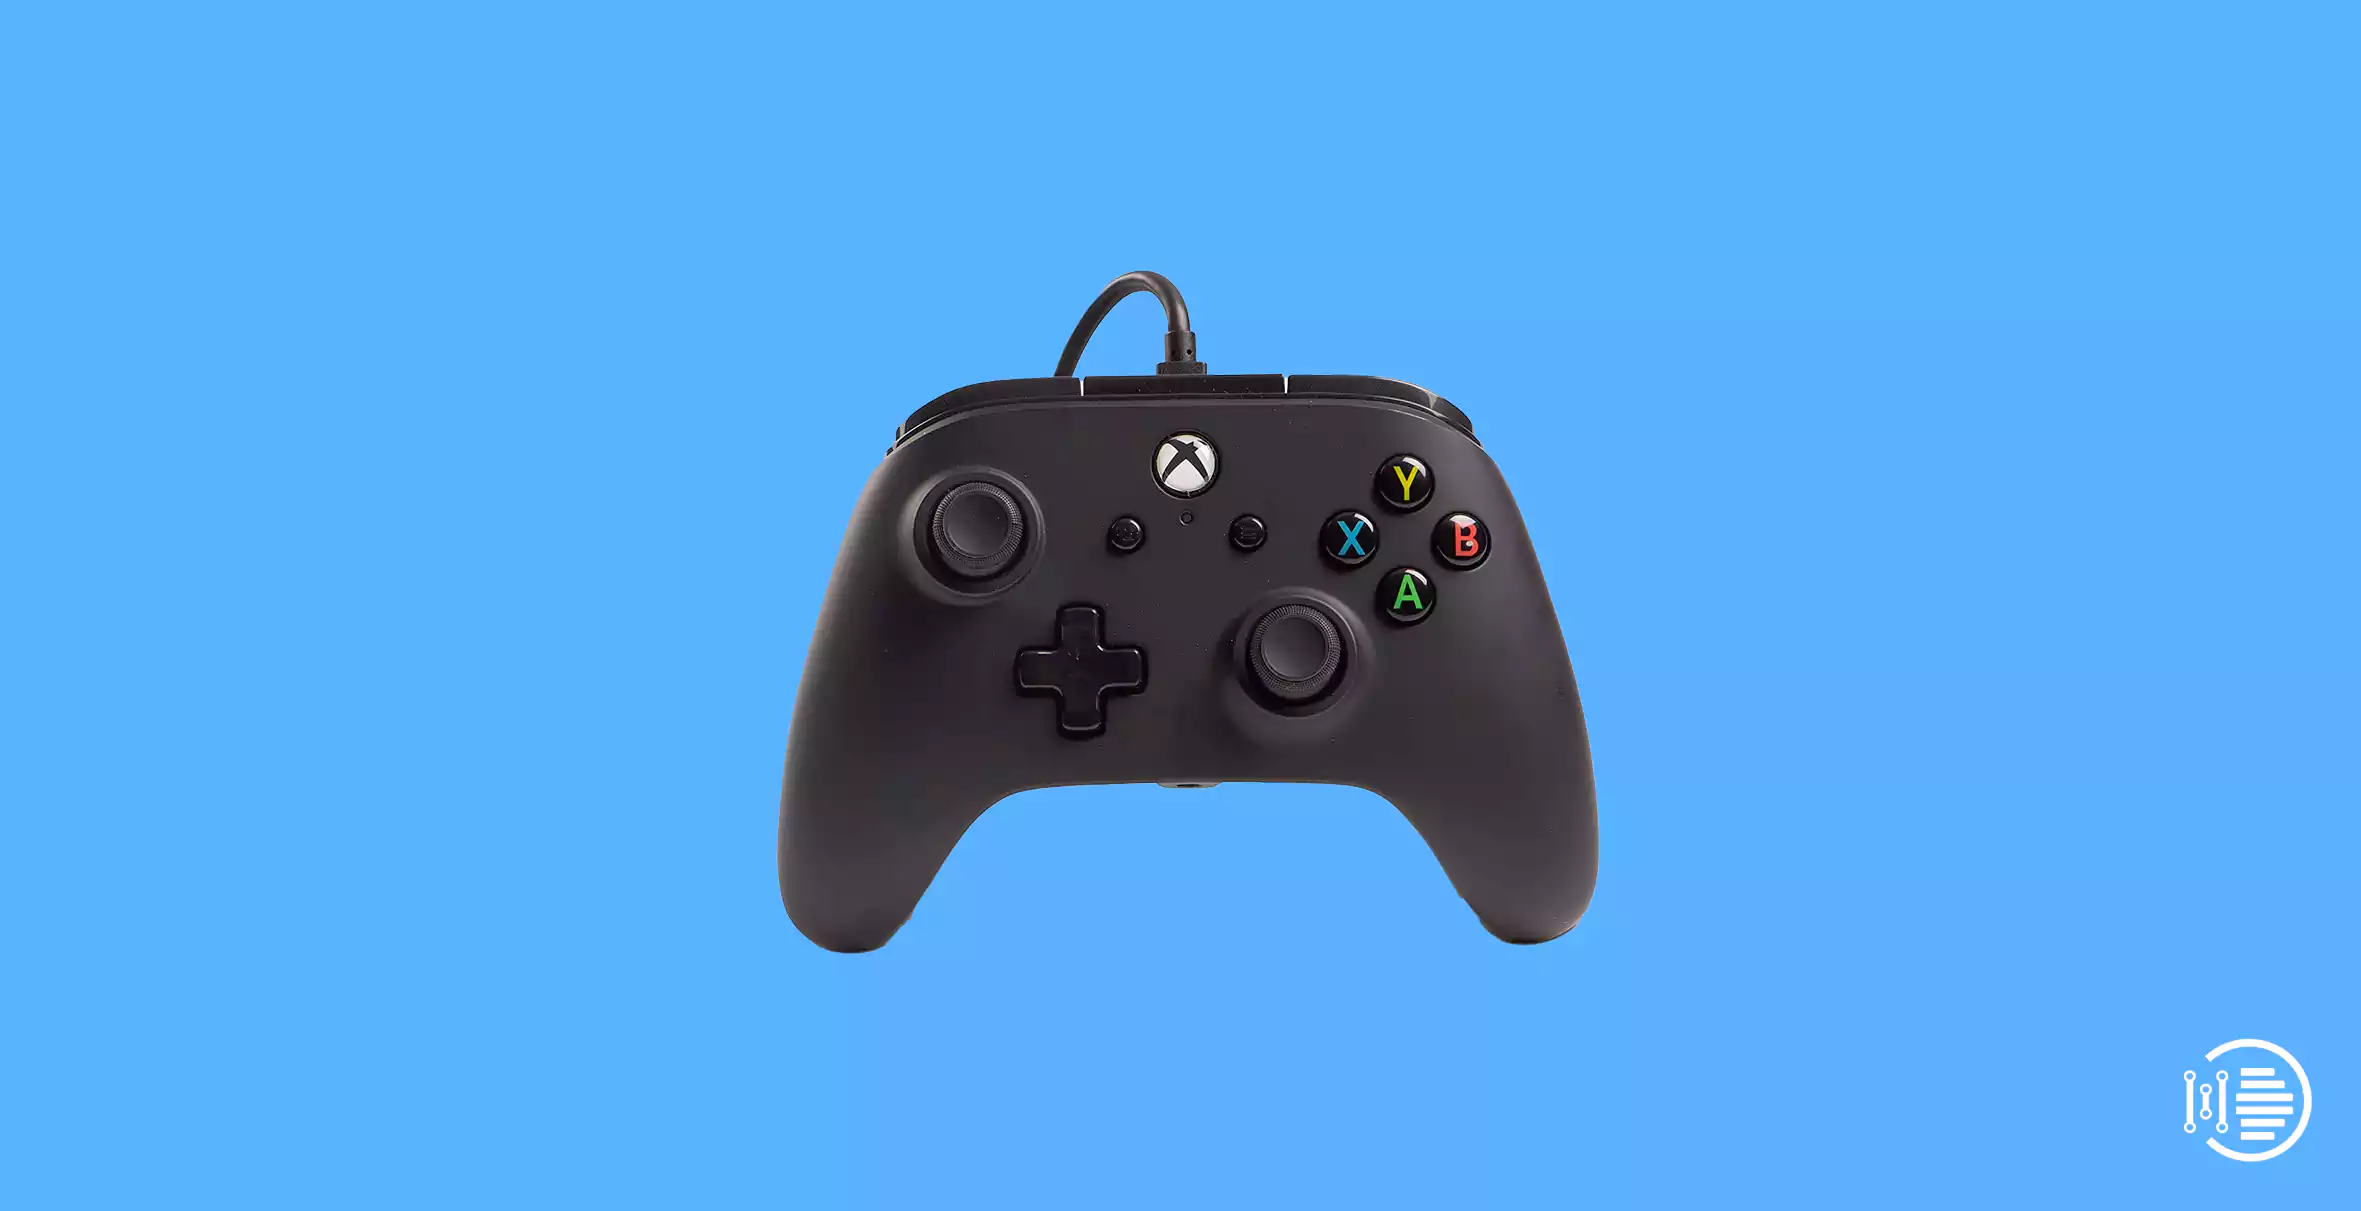 Best PowerA Xbox controller under $250